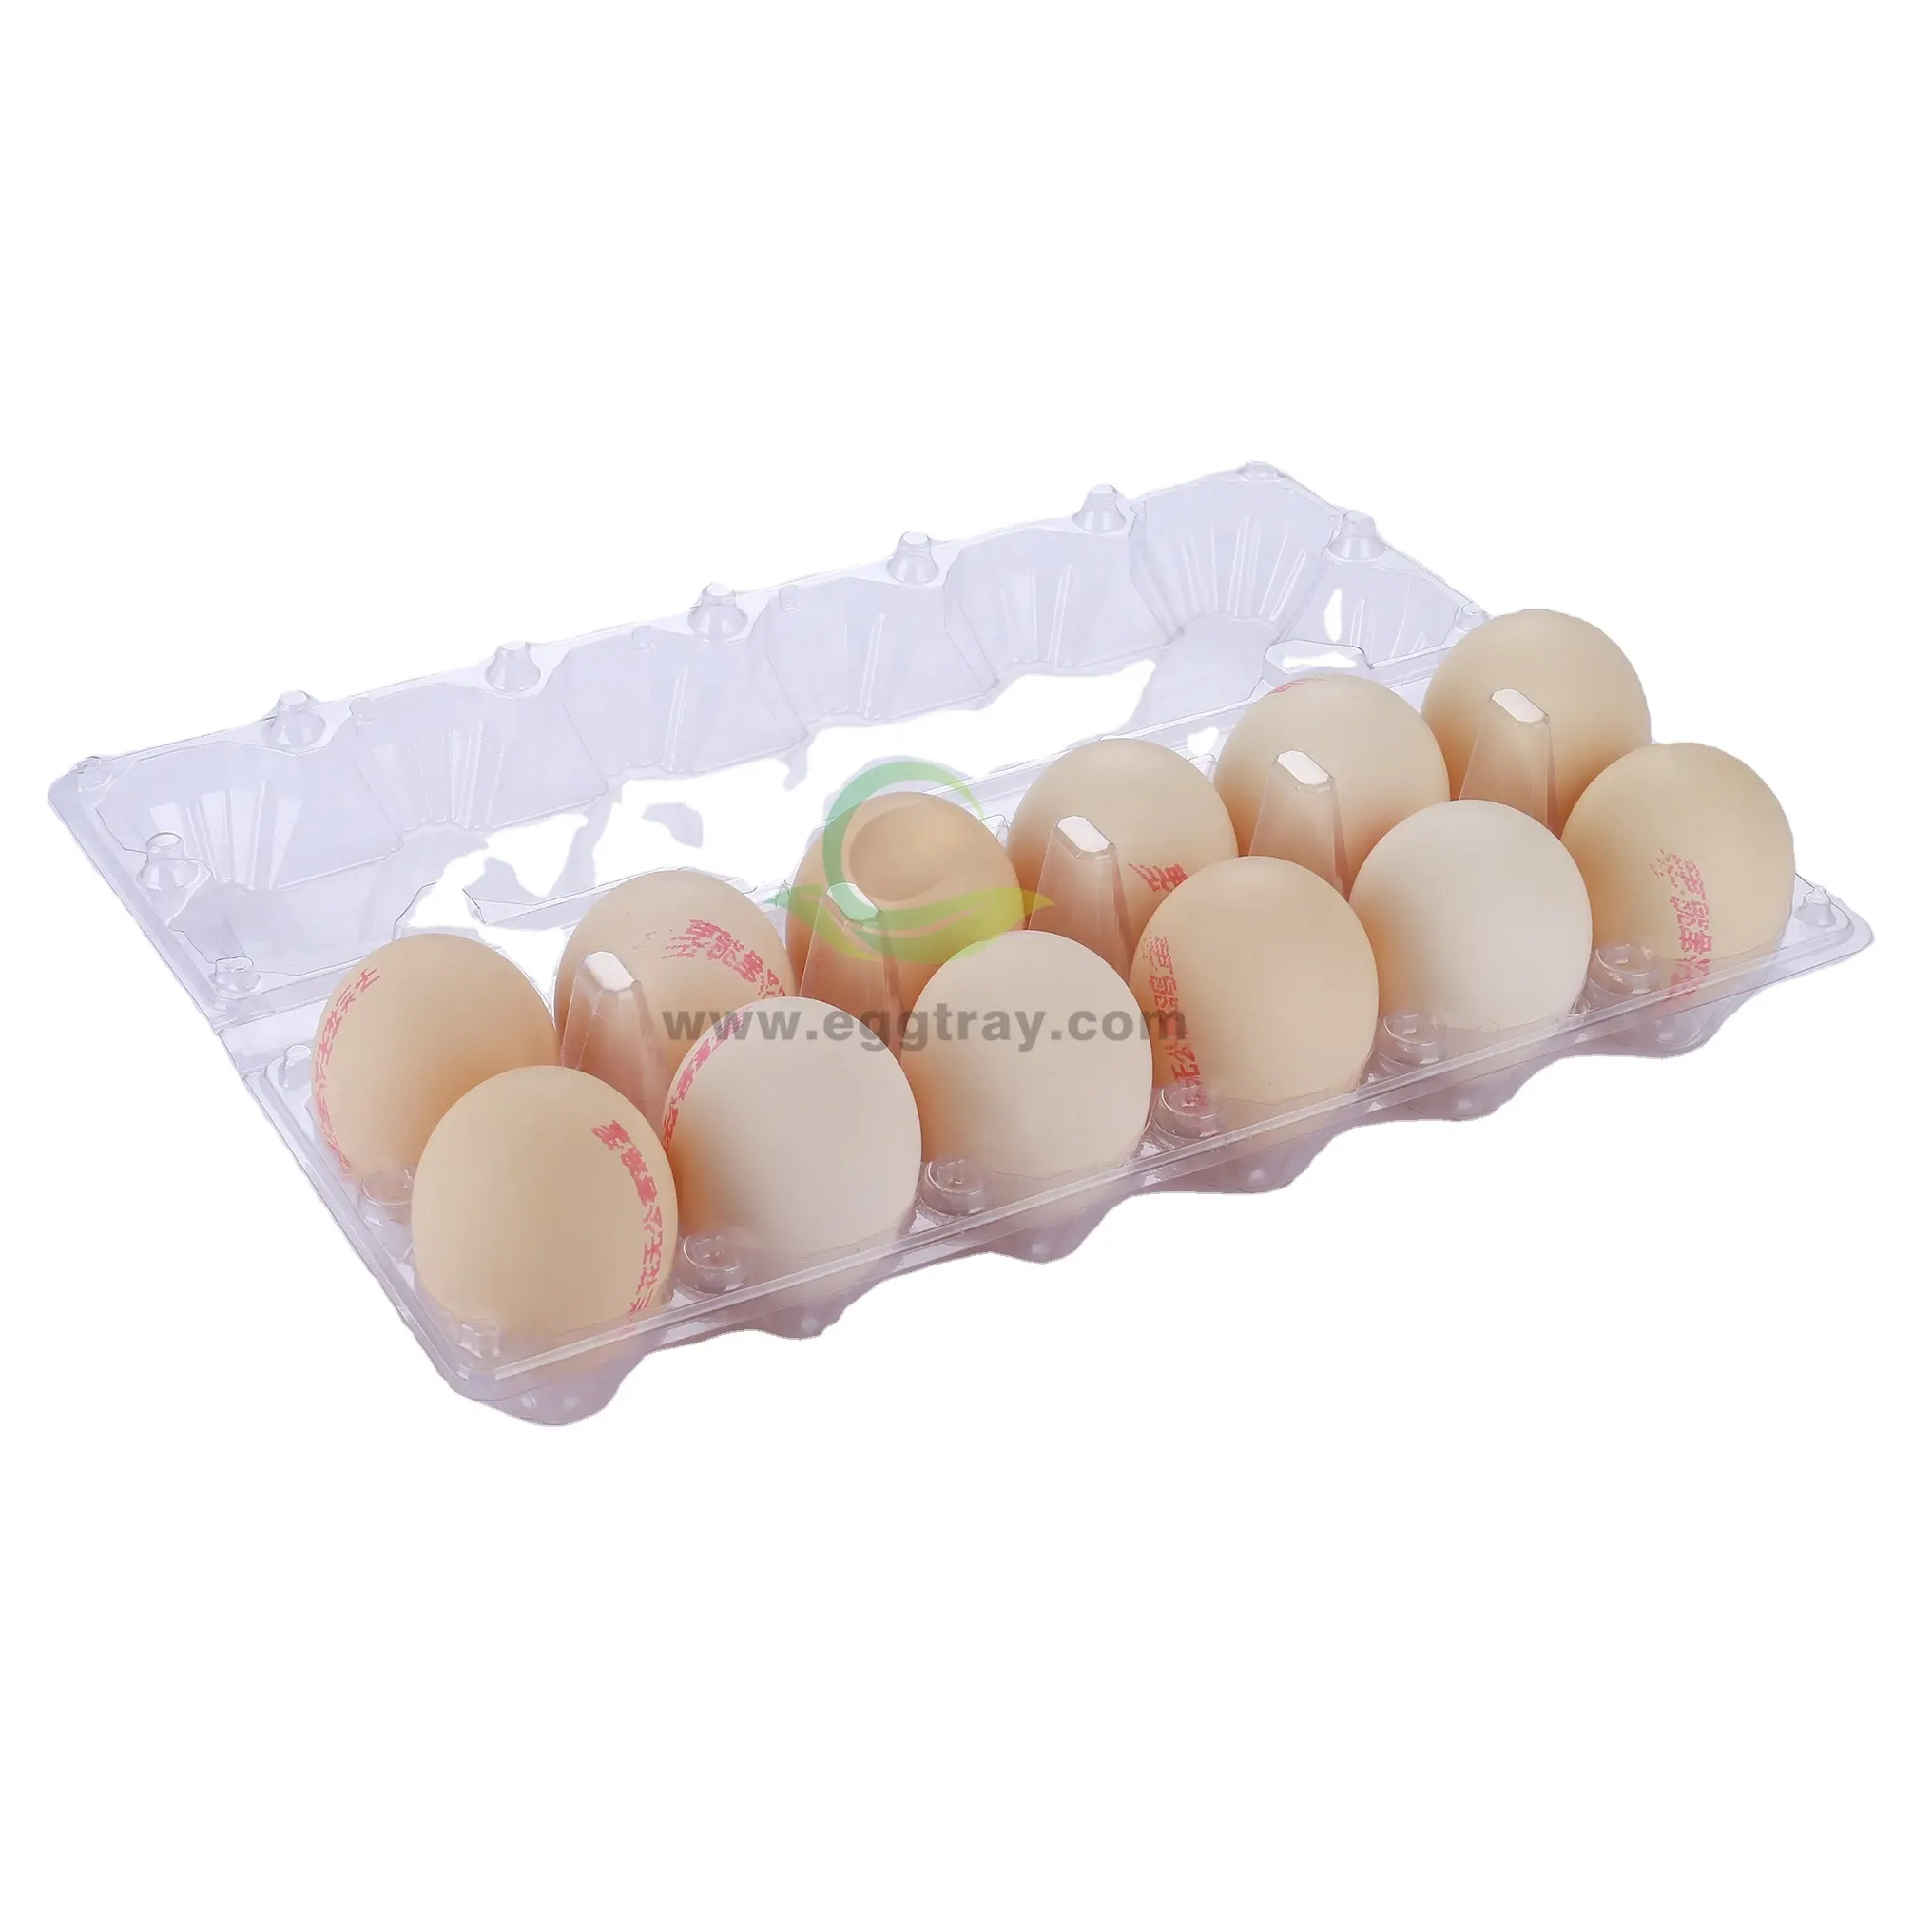 Bandeja plástica para ovos com 12 furos, embalagem bandeja para ovos de galinha, atacado transparente